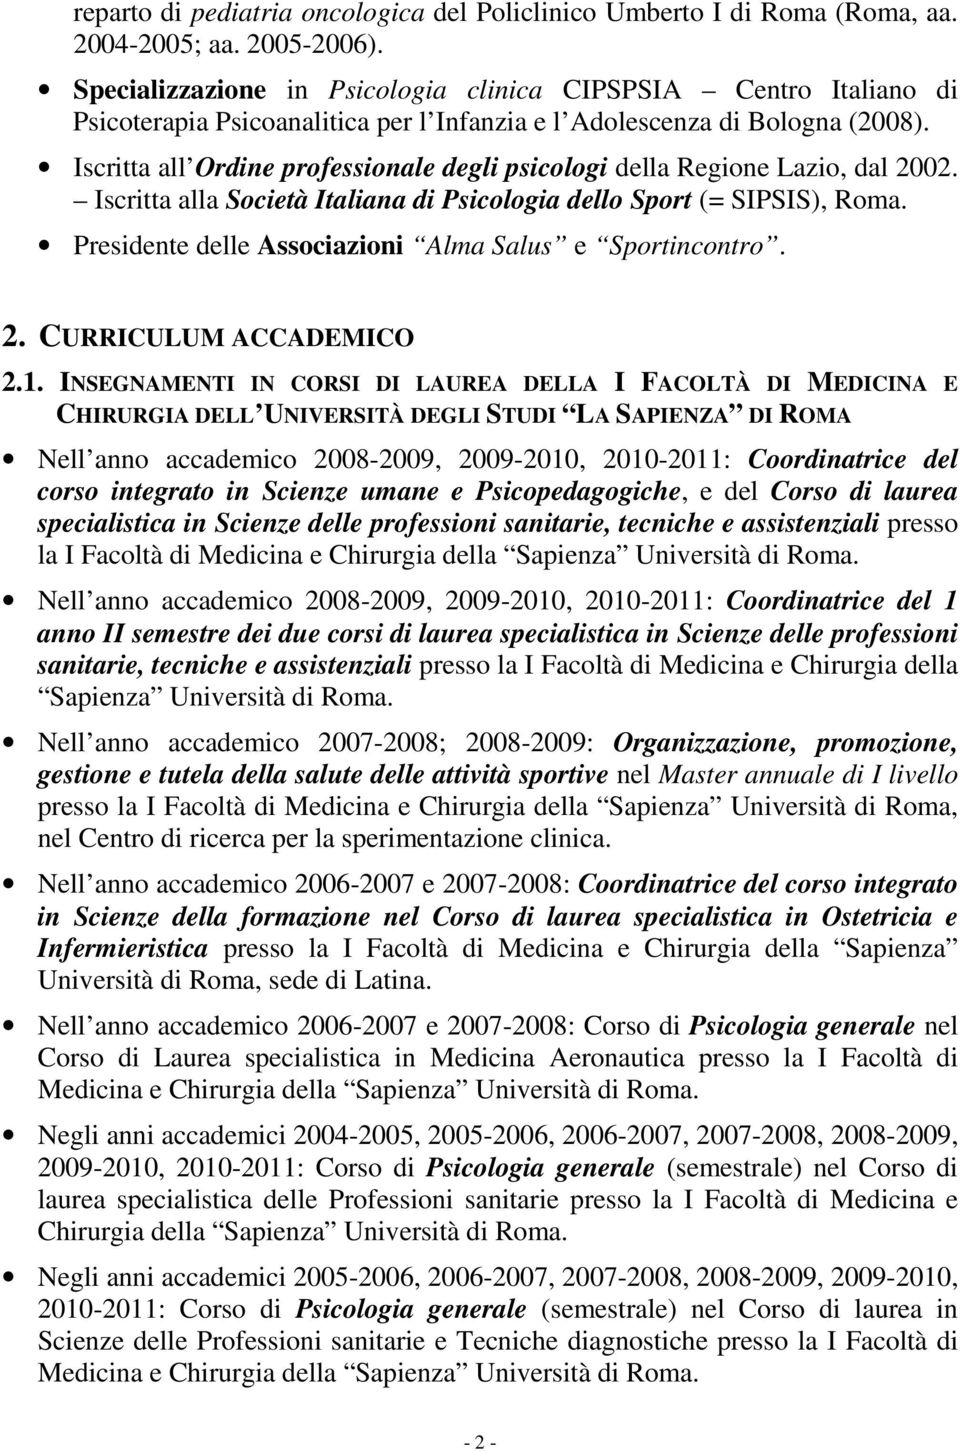 Iscritta all Ordine professionale degli psicologi della Regione Lazio, dal 2002. Iscritta alla Società Italiana di Psicologia dello Sport (= SIPSIS), Roma.